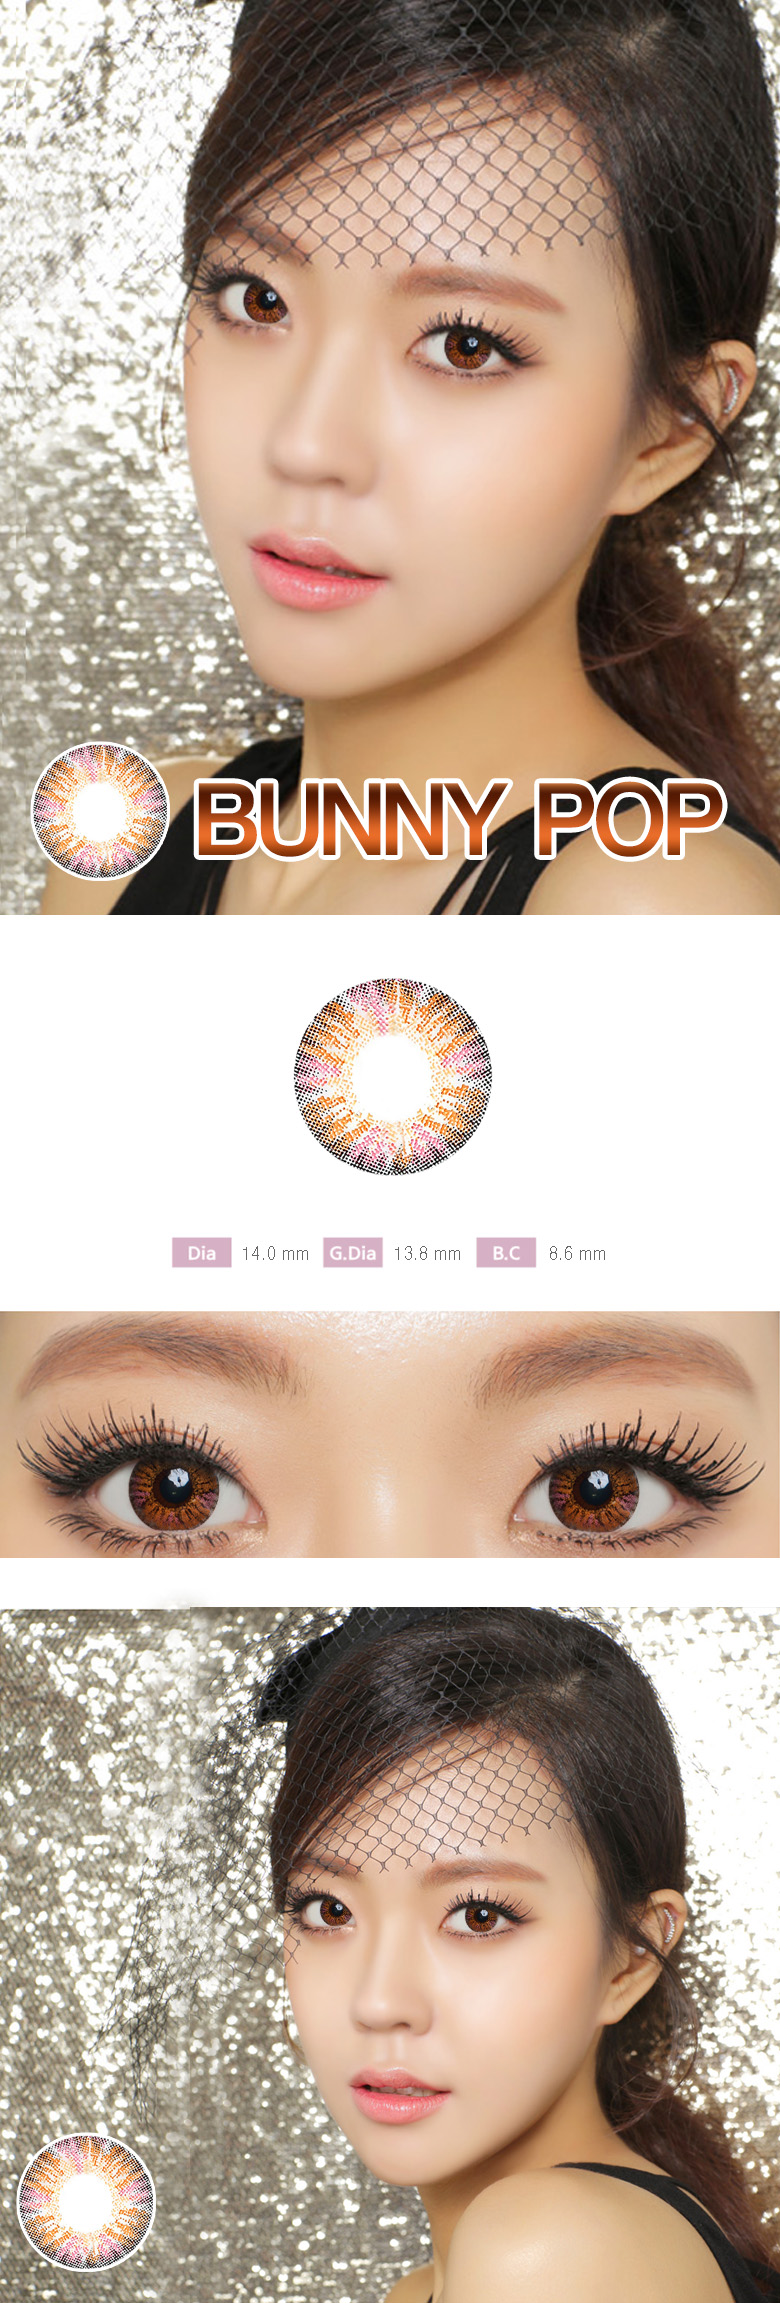 [ピンク/PINK] バニーポップ - BUNNY POP [14.0mm/AD KOREA社]